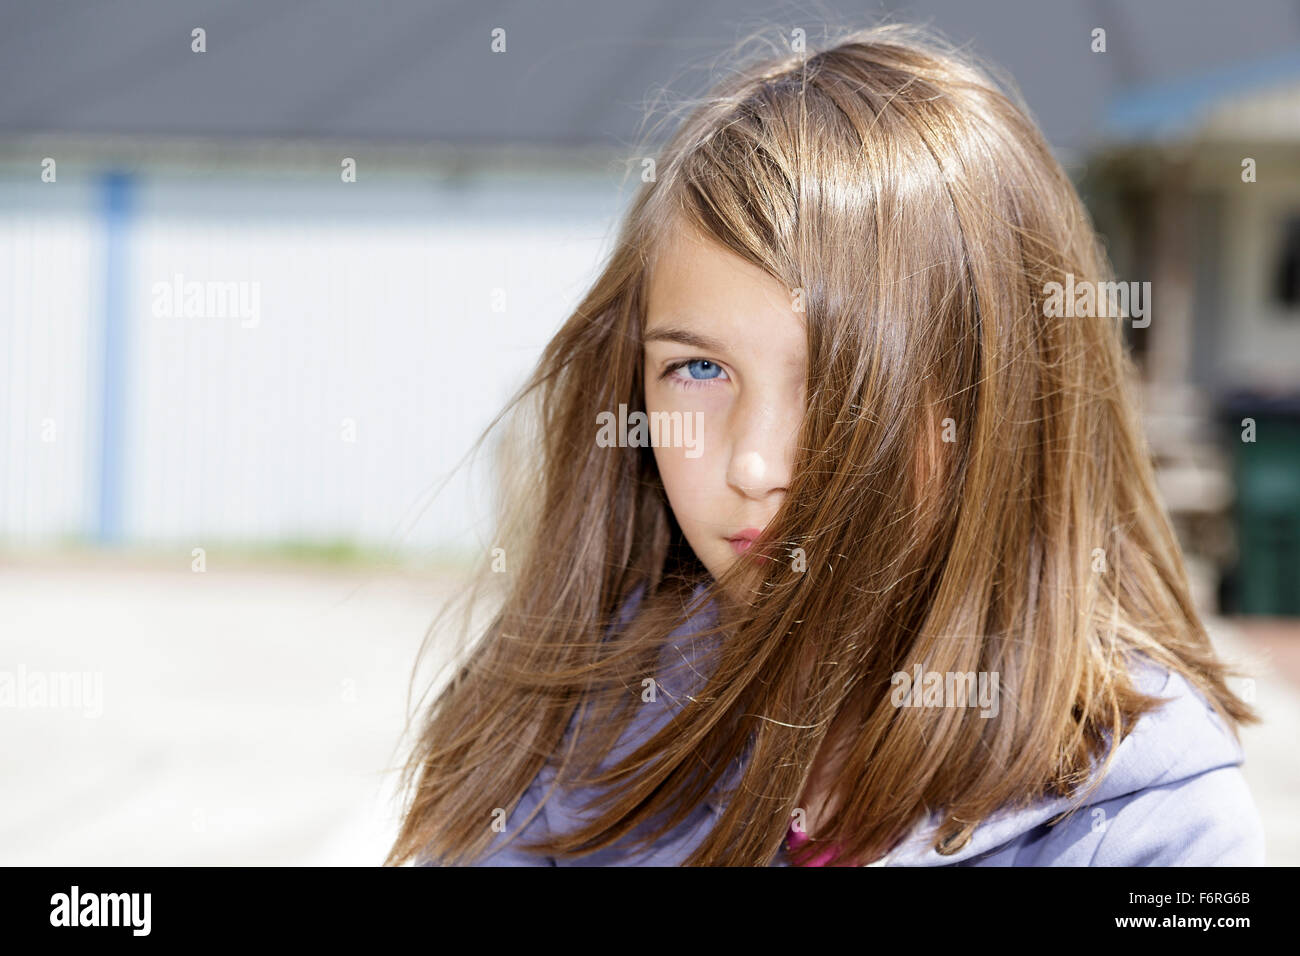 Jeune femme brune cheveux longs pre-adolecsent girl looking at camera avec une attitude portrait outdoors modèle libération : Oui. Biens : Non. Banque D'Images